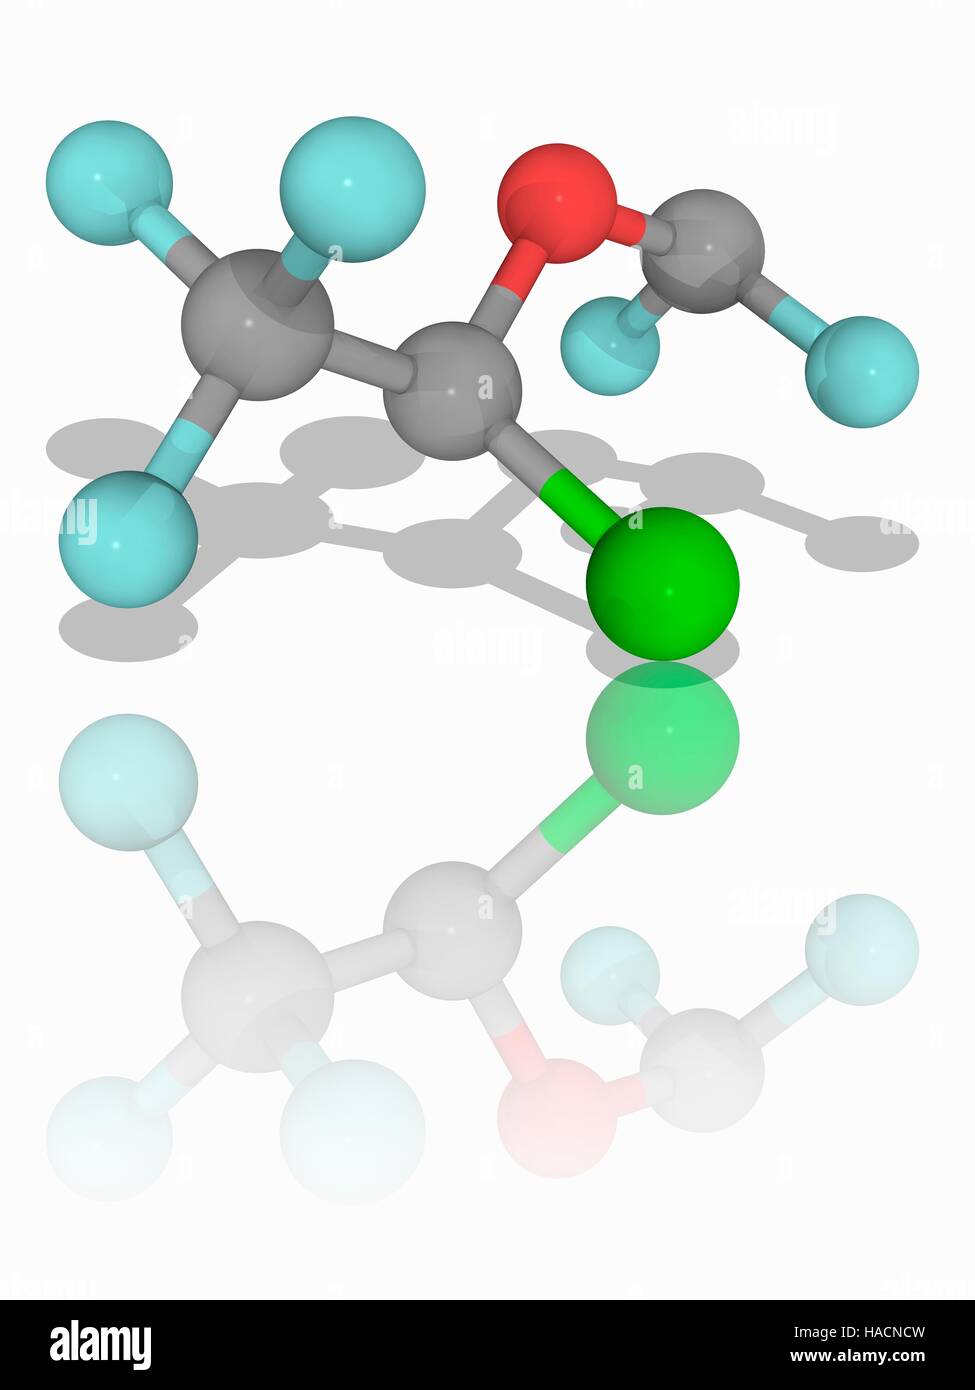 Isofluran. Molekülmodell halogenierte Ether Isofluorane (C3. H2. Cl.F5.O), eine Chemikalie, die durch Inhalation Anästhesie Verwaltung verwendet. Atome als Kugeln dargestellt werden und sind farblich gekennzeichnet: Kohlenstoff (grau), Wasserstoff (weiß), Fluor (Cyan), Sauerstoff (rot) und Chlor (grün). Abbildung. Stockfoto